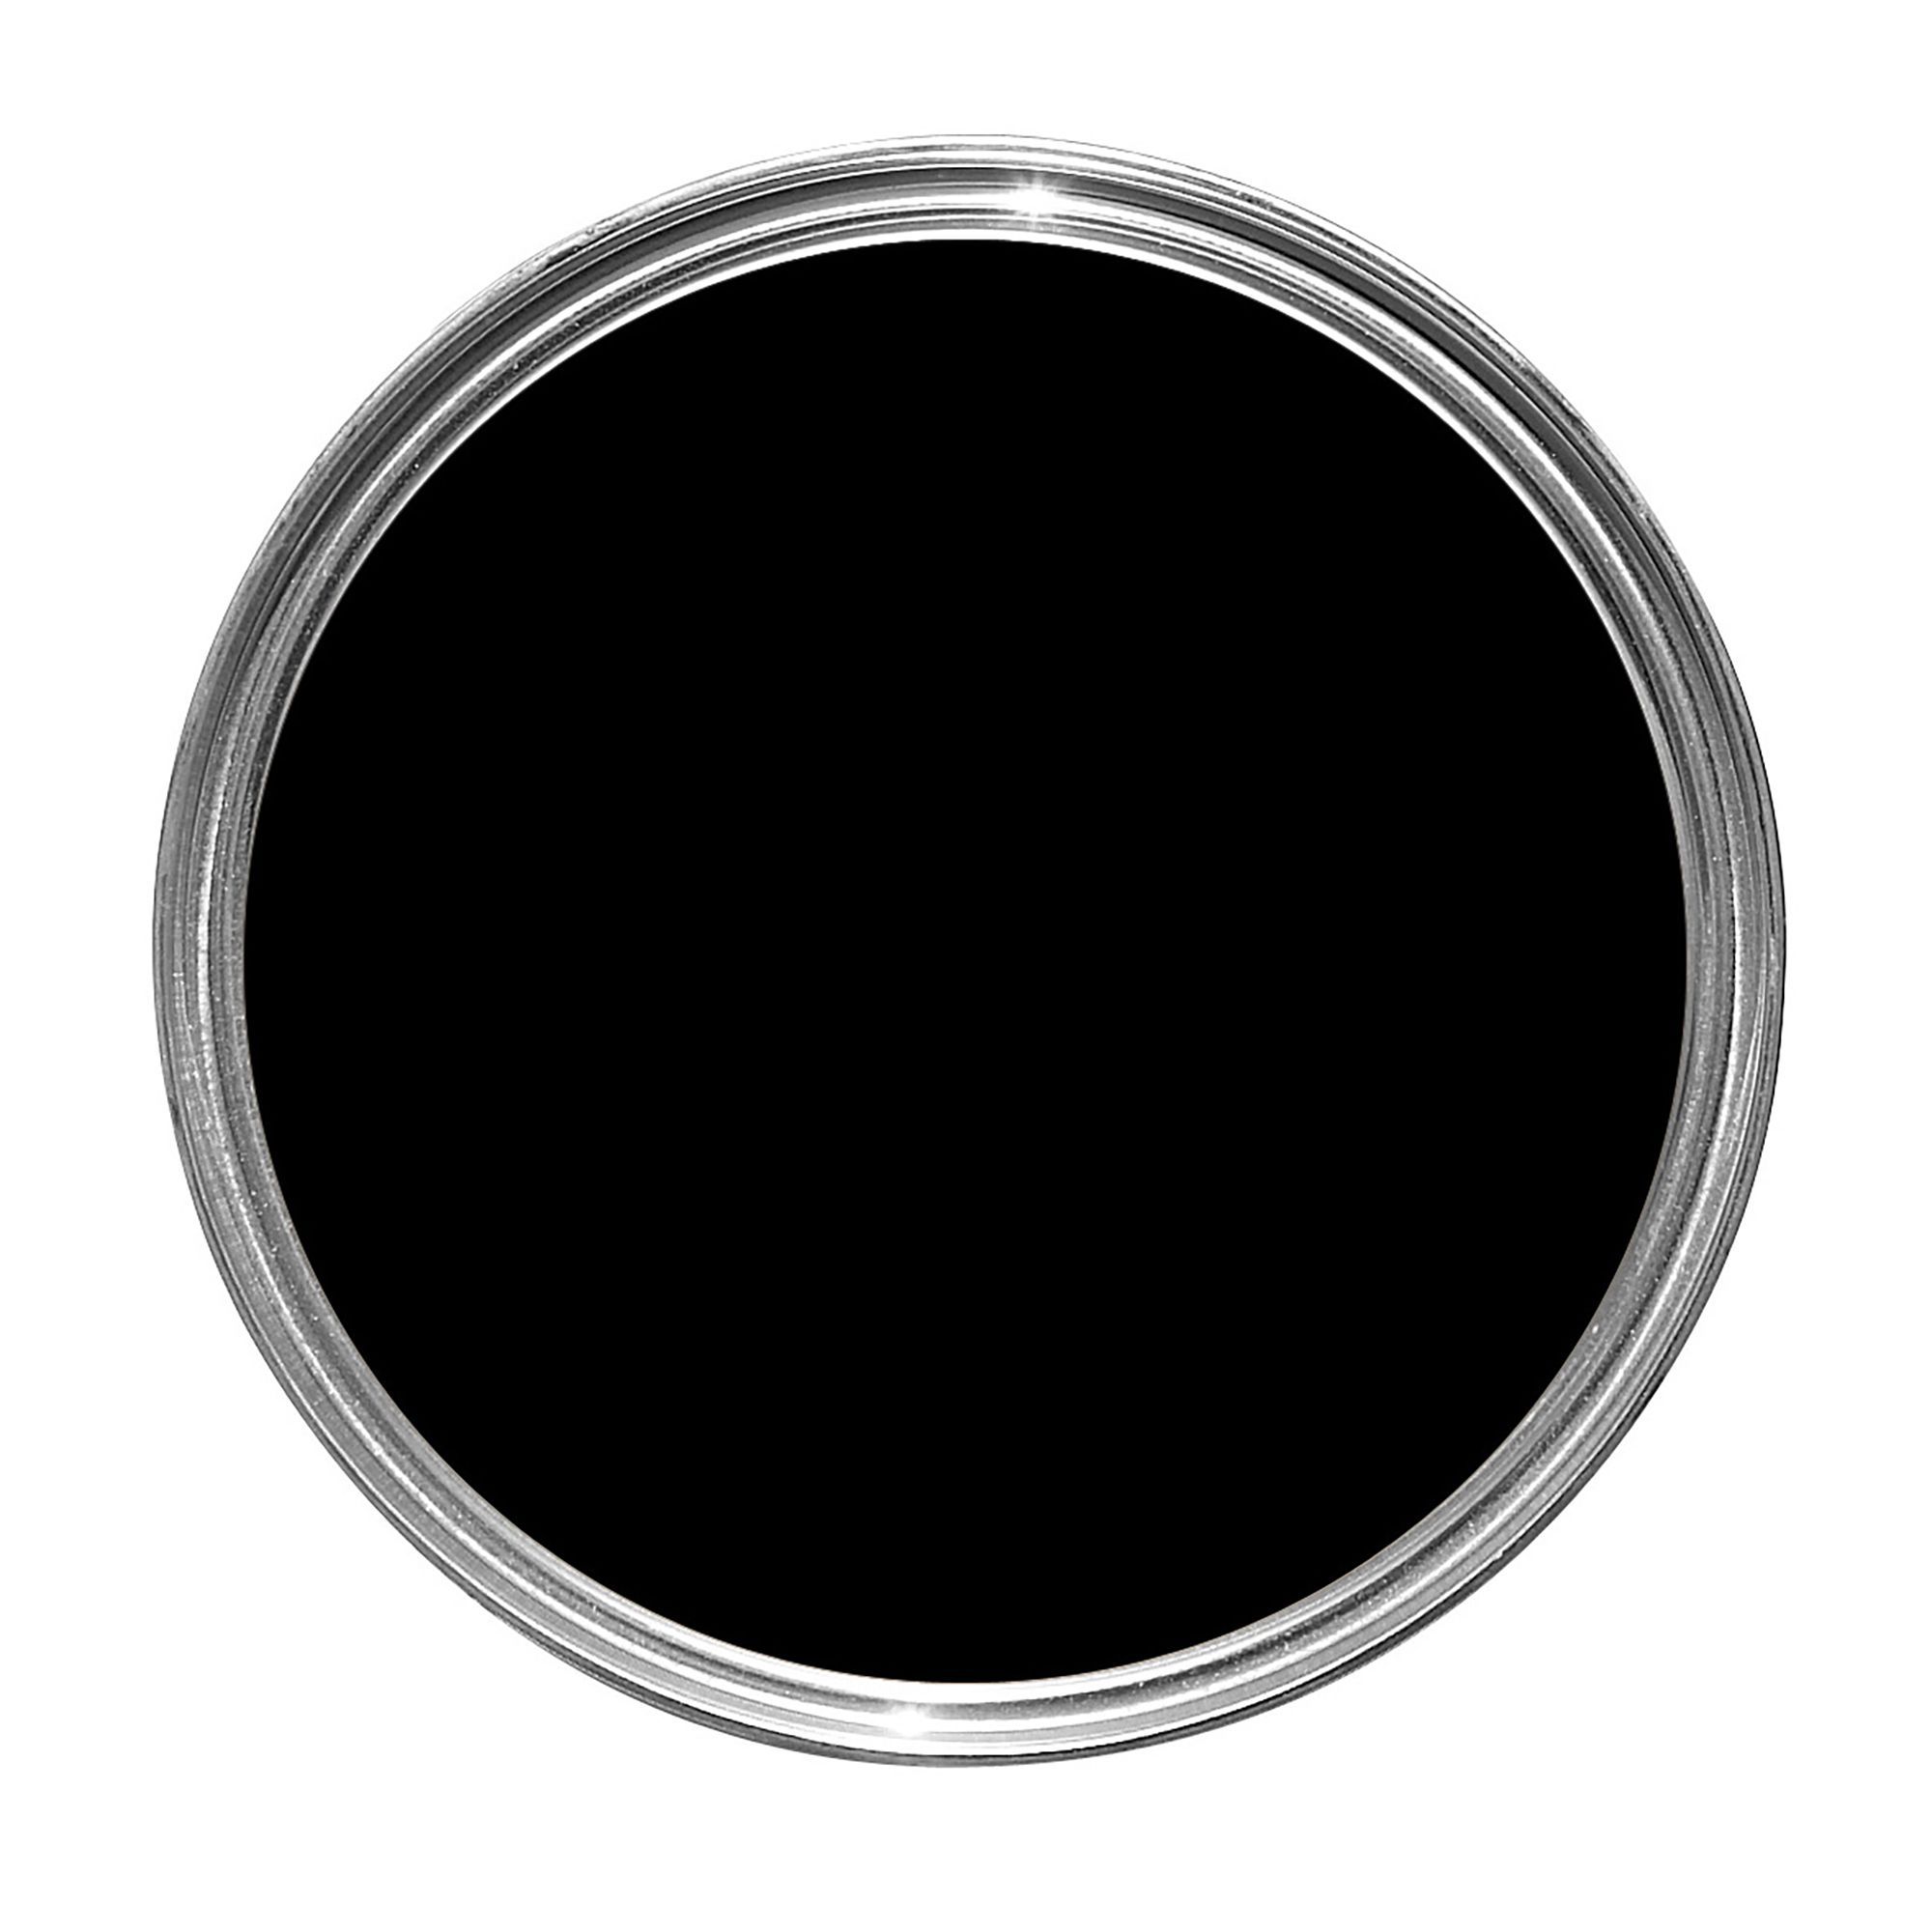 фотографии черного круга